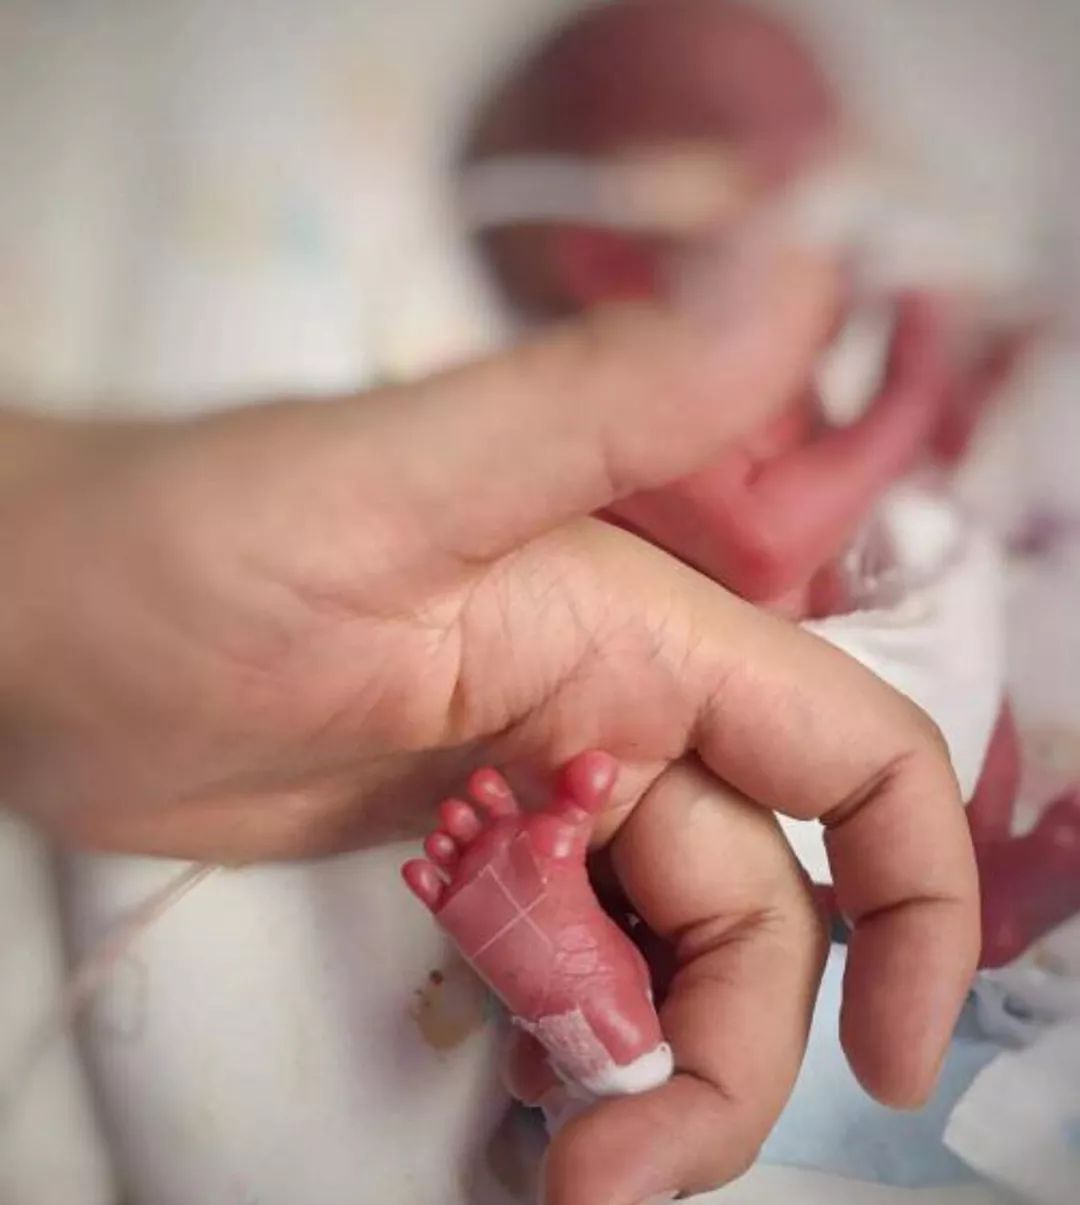 极早产婴儿出生仅29厘米,体重580克,在保温箱住140天后出院